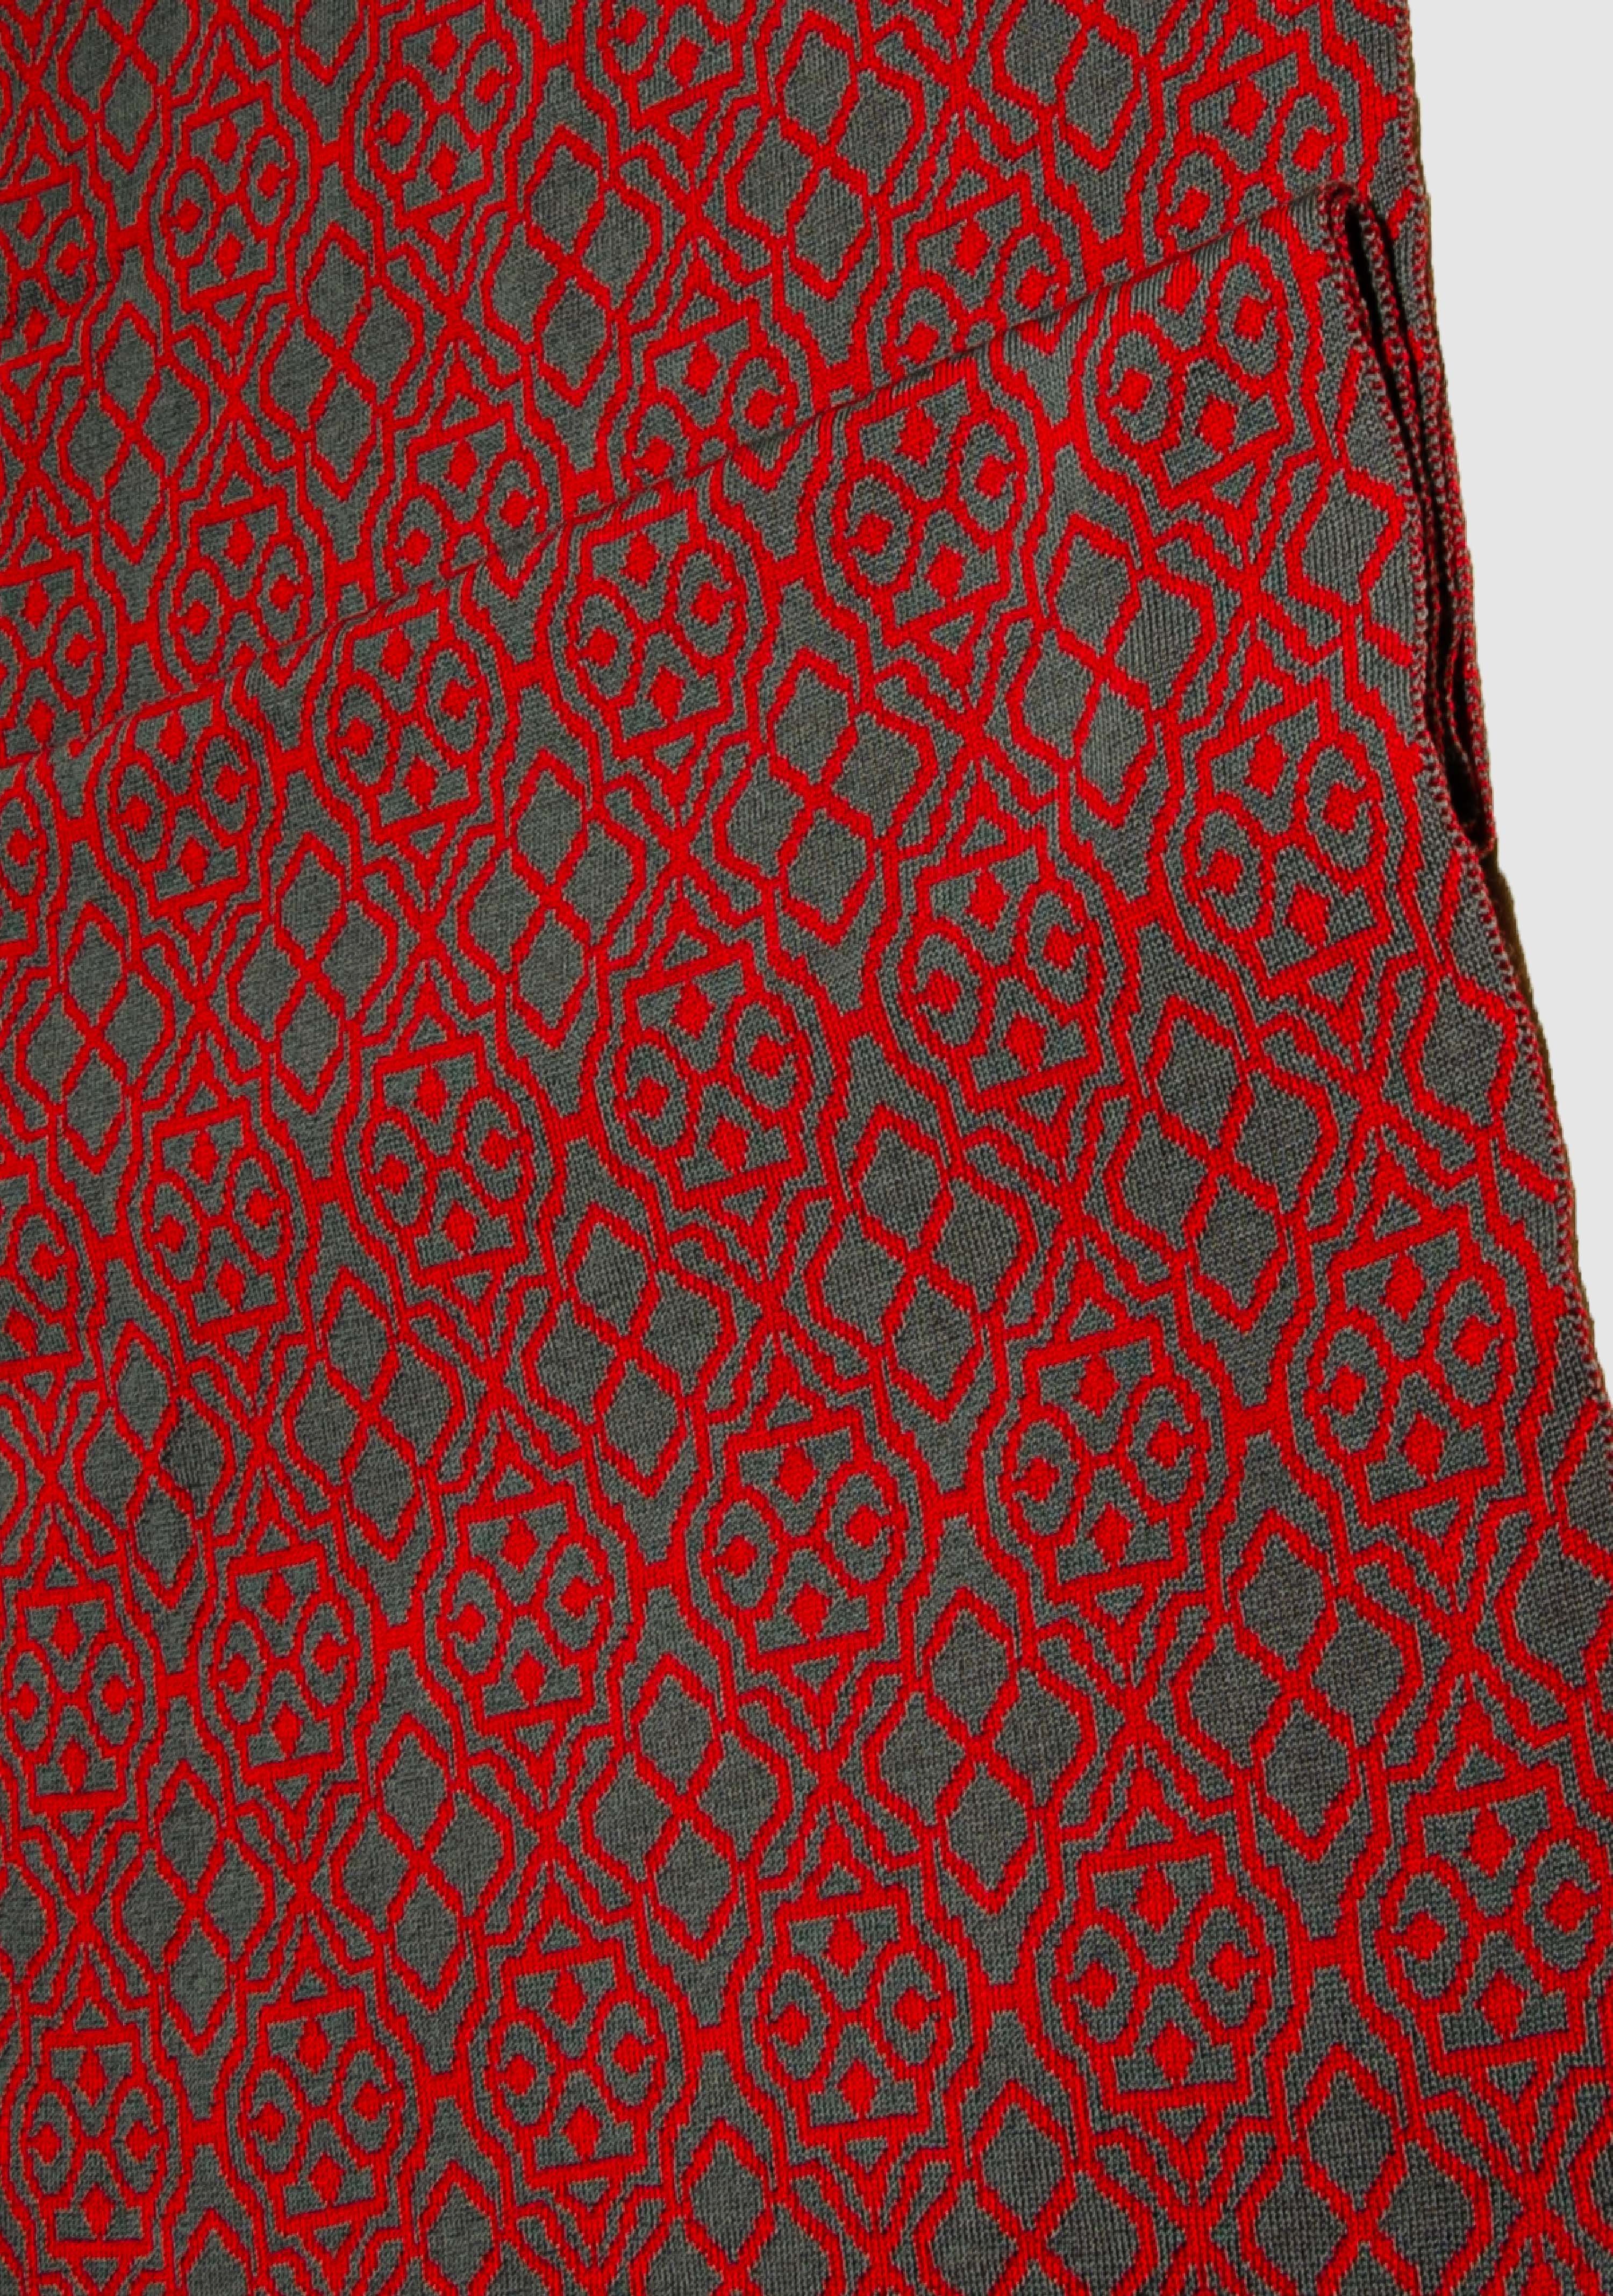 LANARTO slow fashion Wollschal Schal Netz zweifarbig in schönen Farben 100% Merino extrasoft rot_graphit